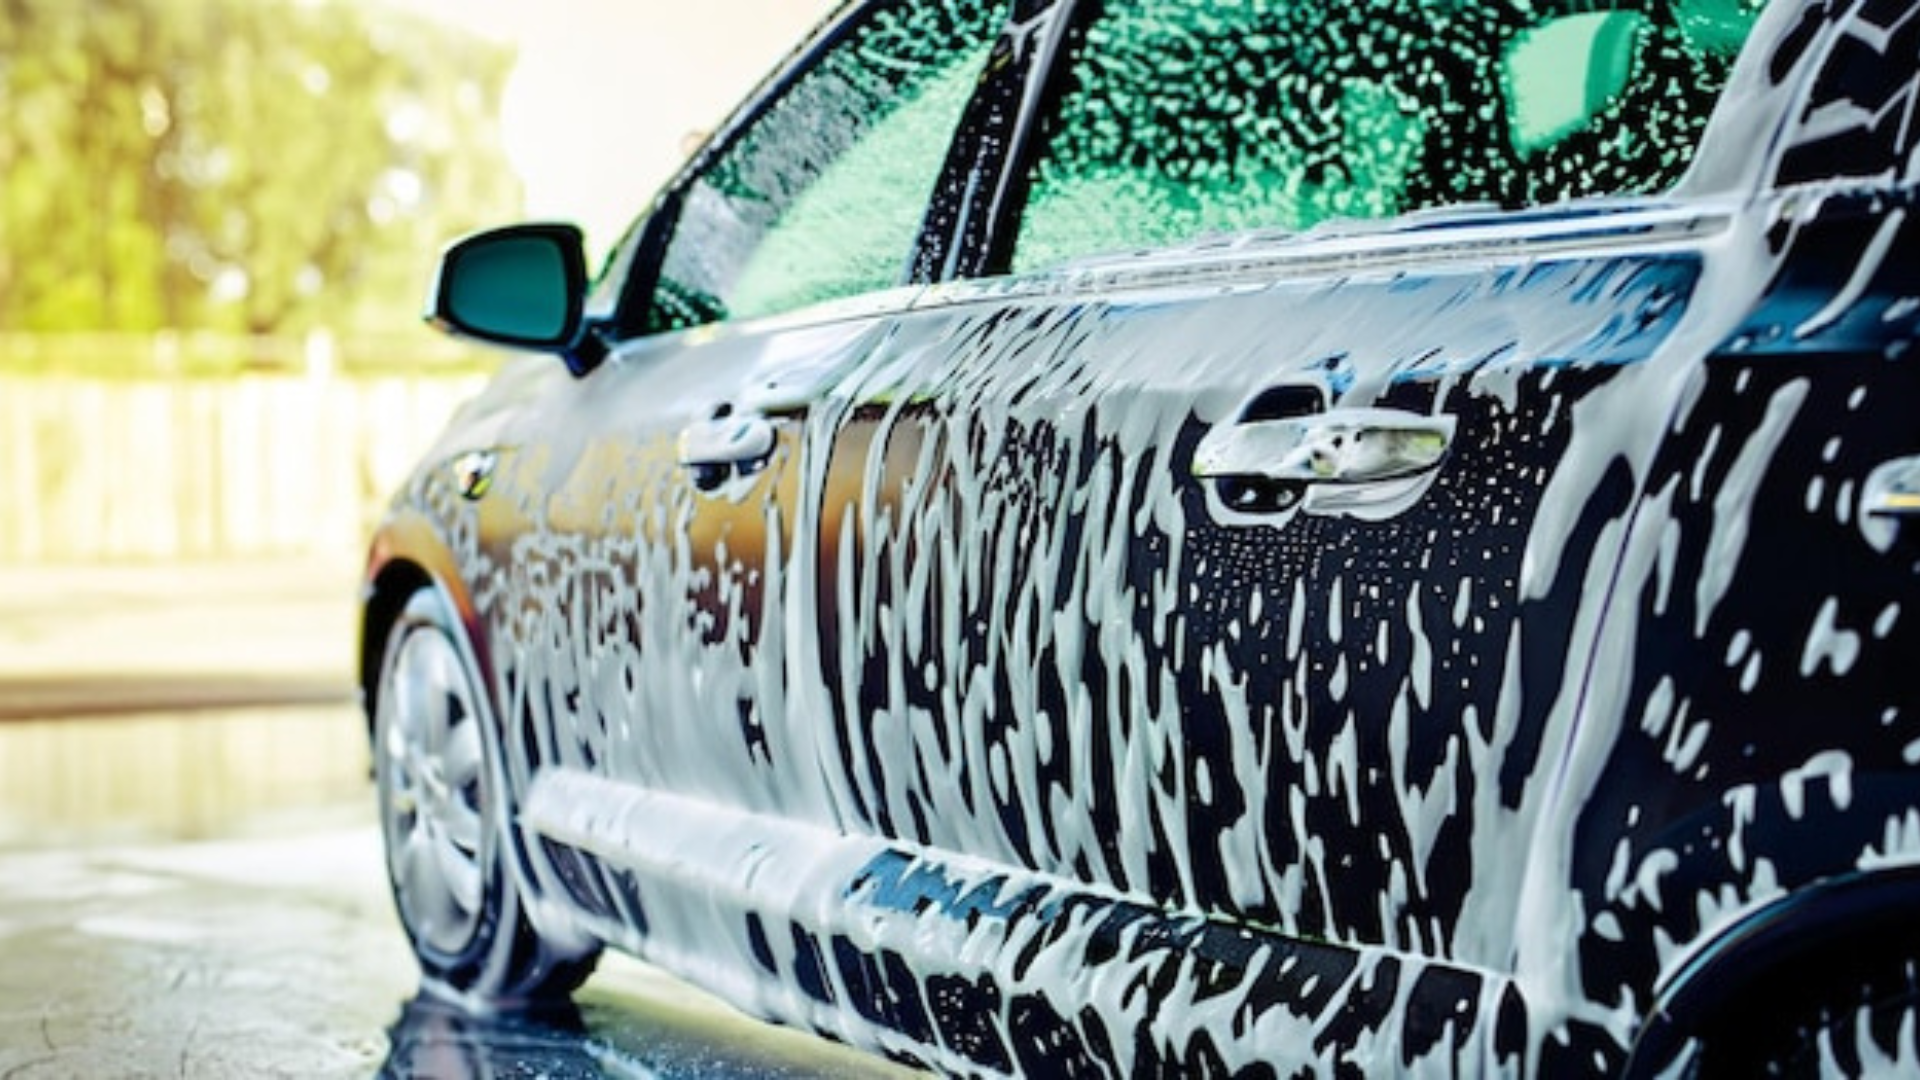 Hypoluxo Car Wash: The Best Touchless Car Wash in Florida by Hypoluxo Car  Wash - Issuu